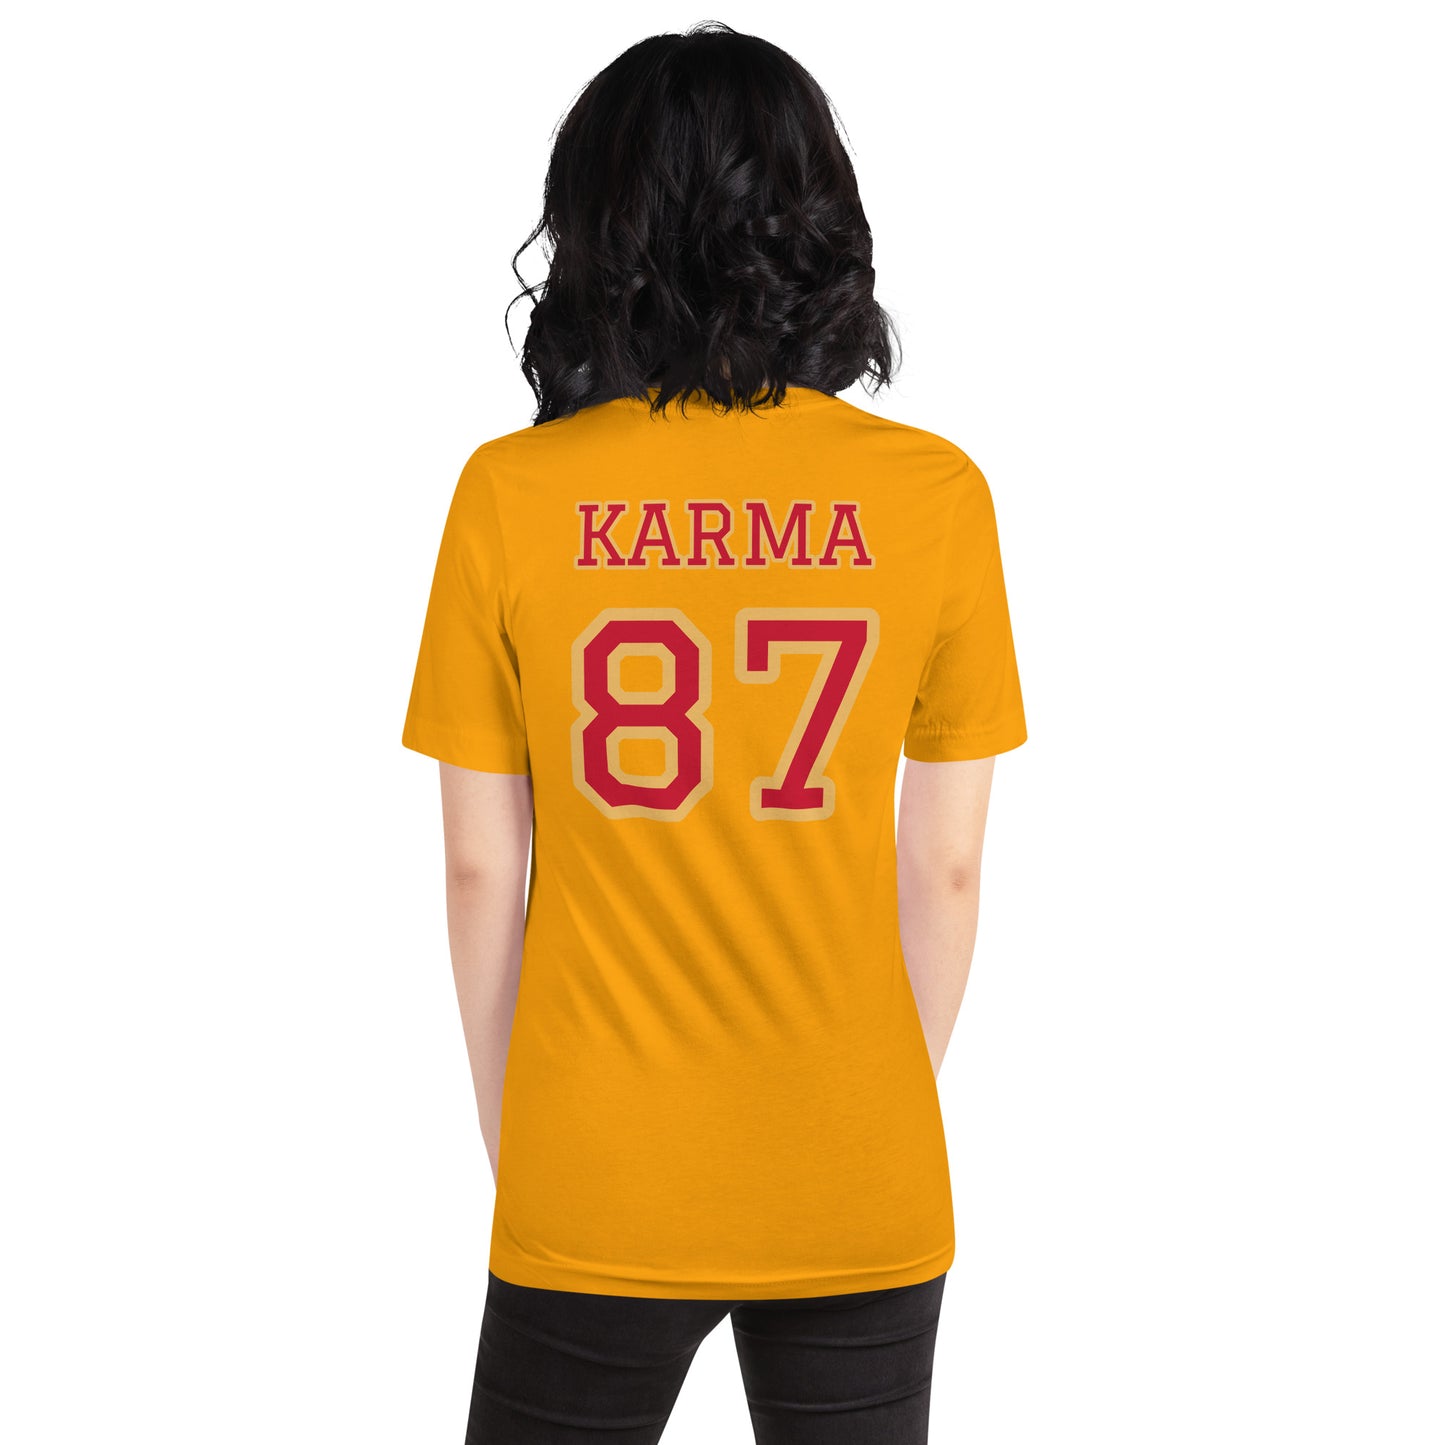 KARMA 87 - Chiefs Colors - Unisex T-Shirt